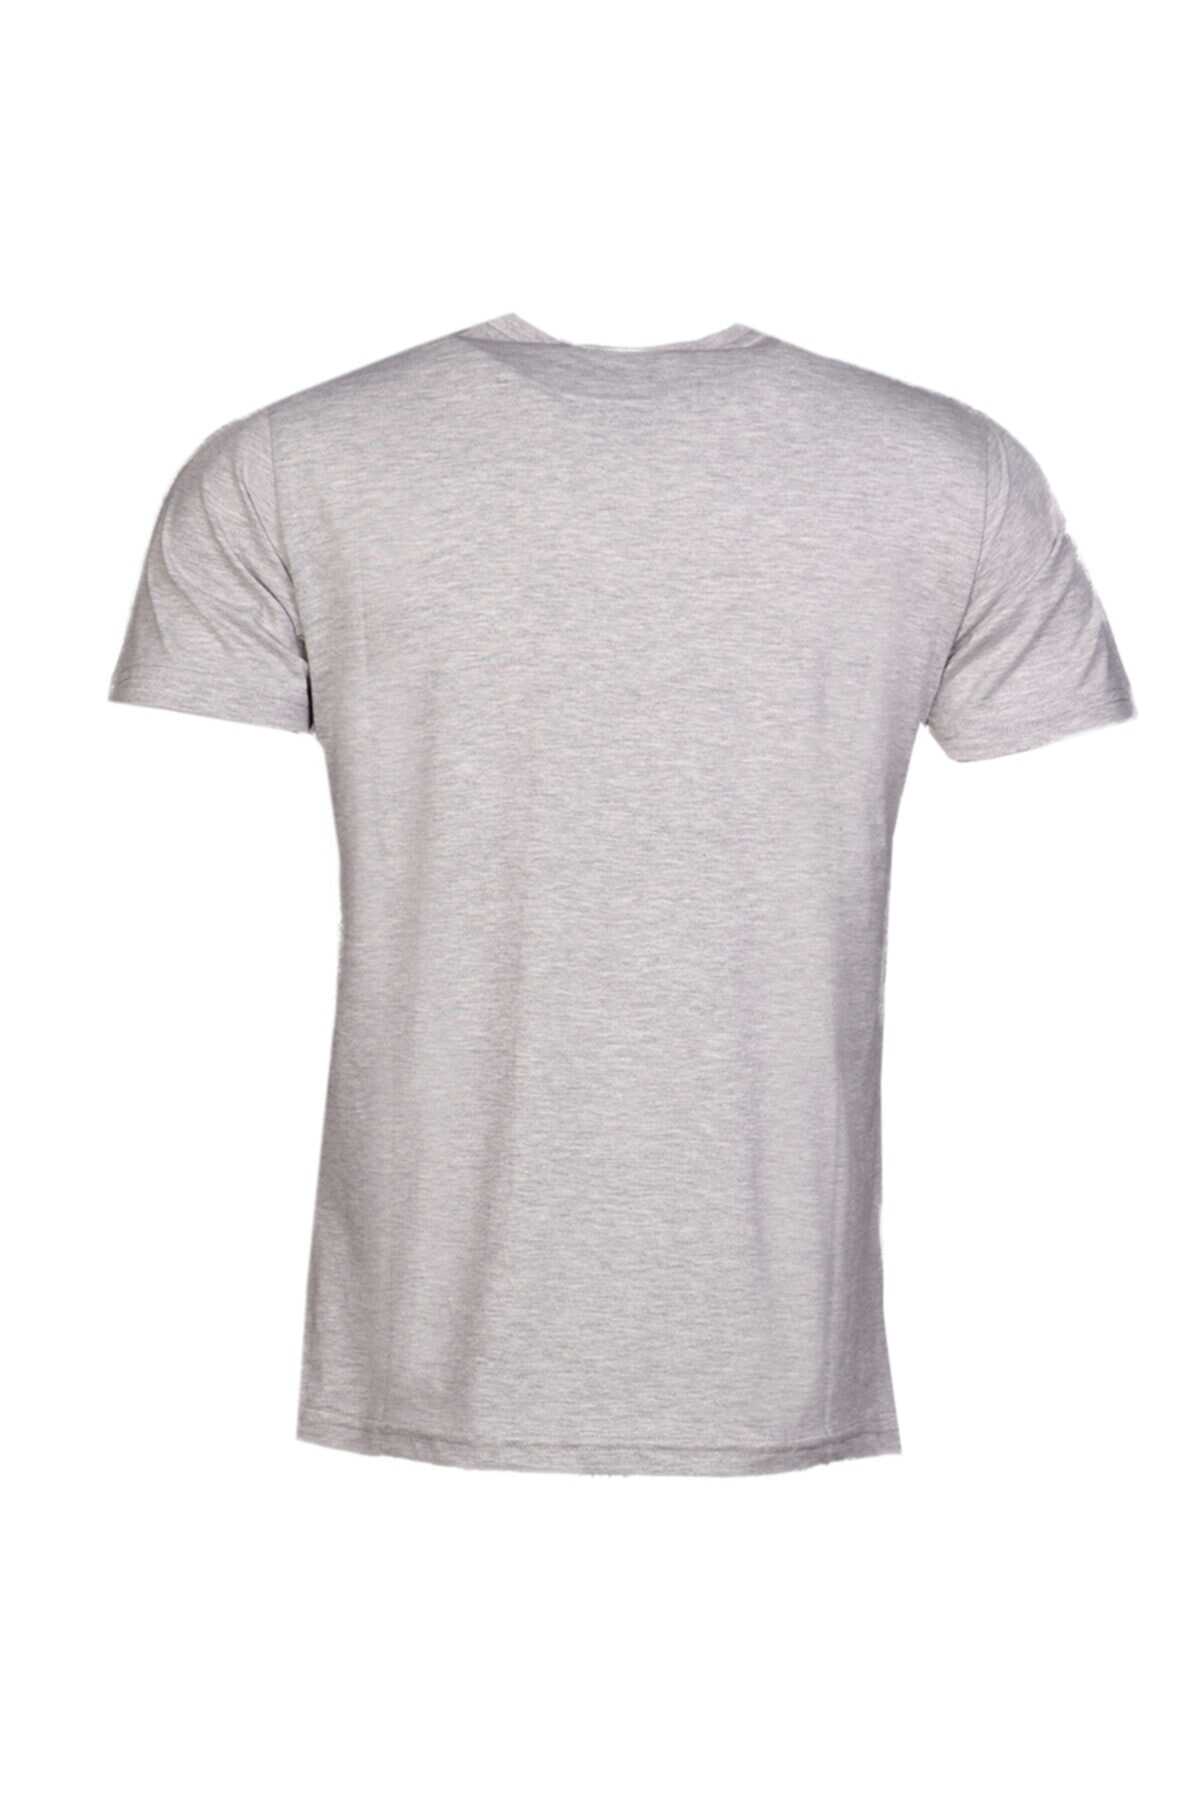 تیشرت یقه گرد چاپ دار مردانه خاکستری برند HUMMEL 